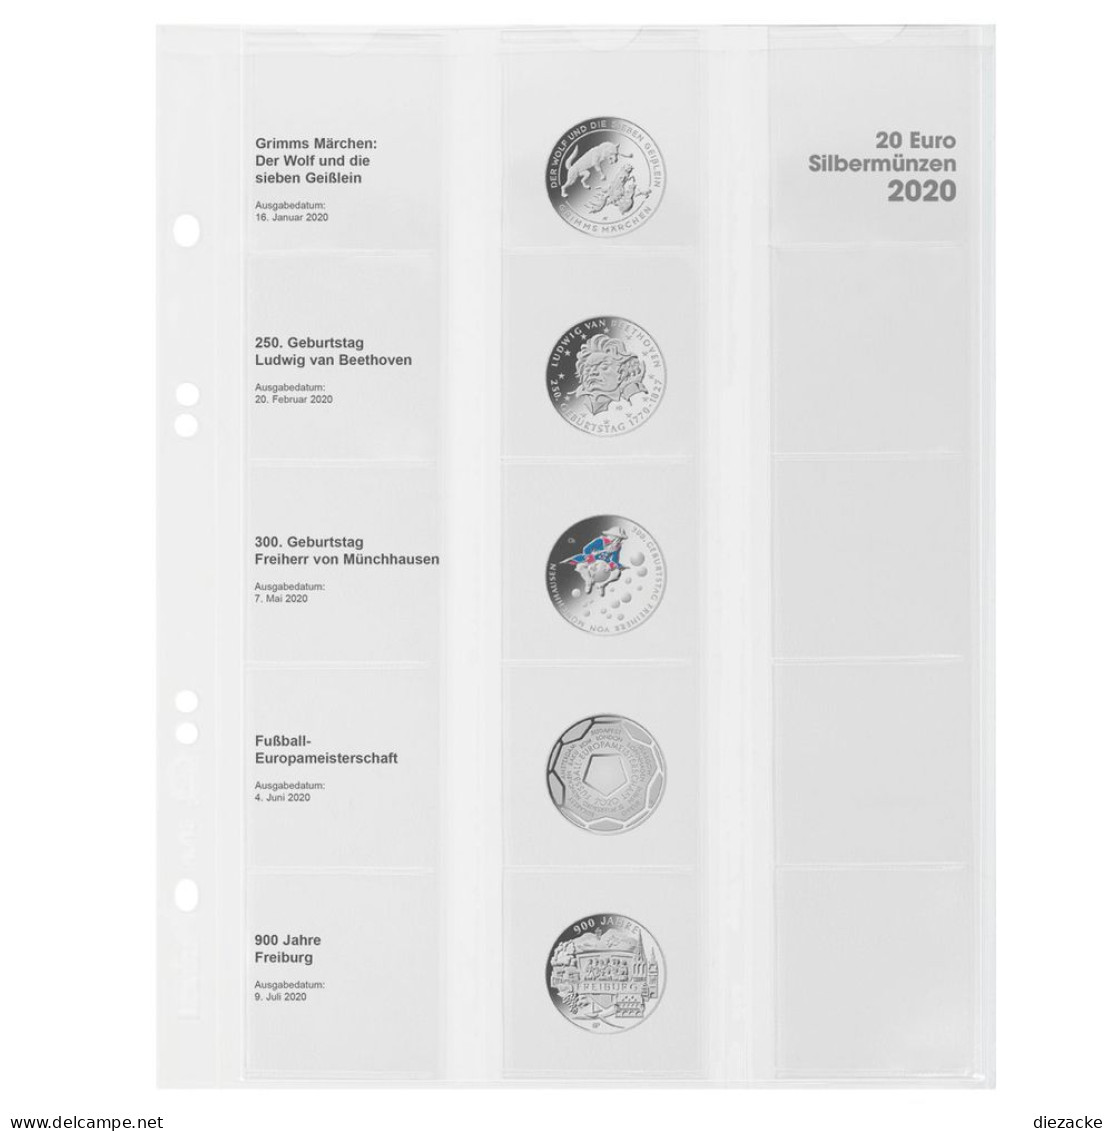 Lindner Vordruckblatt Publica M Für 20 Euro-Silbermünzen MU20E20 Neu - Supplies And Equipment